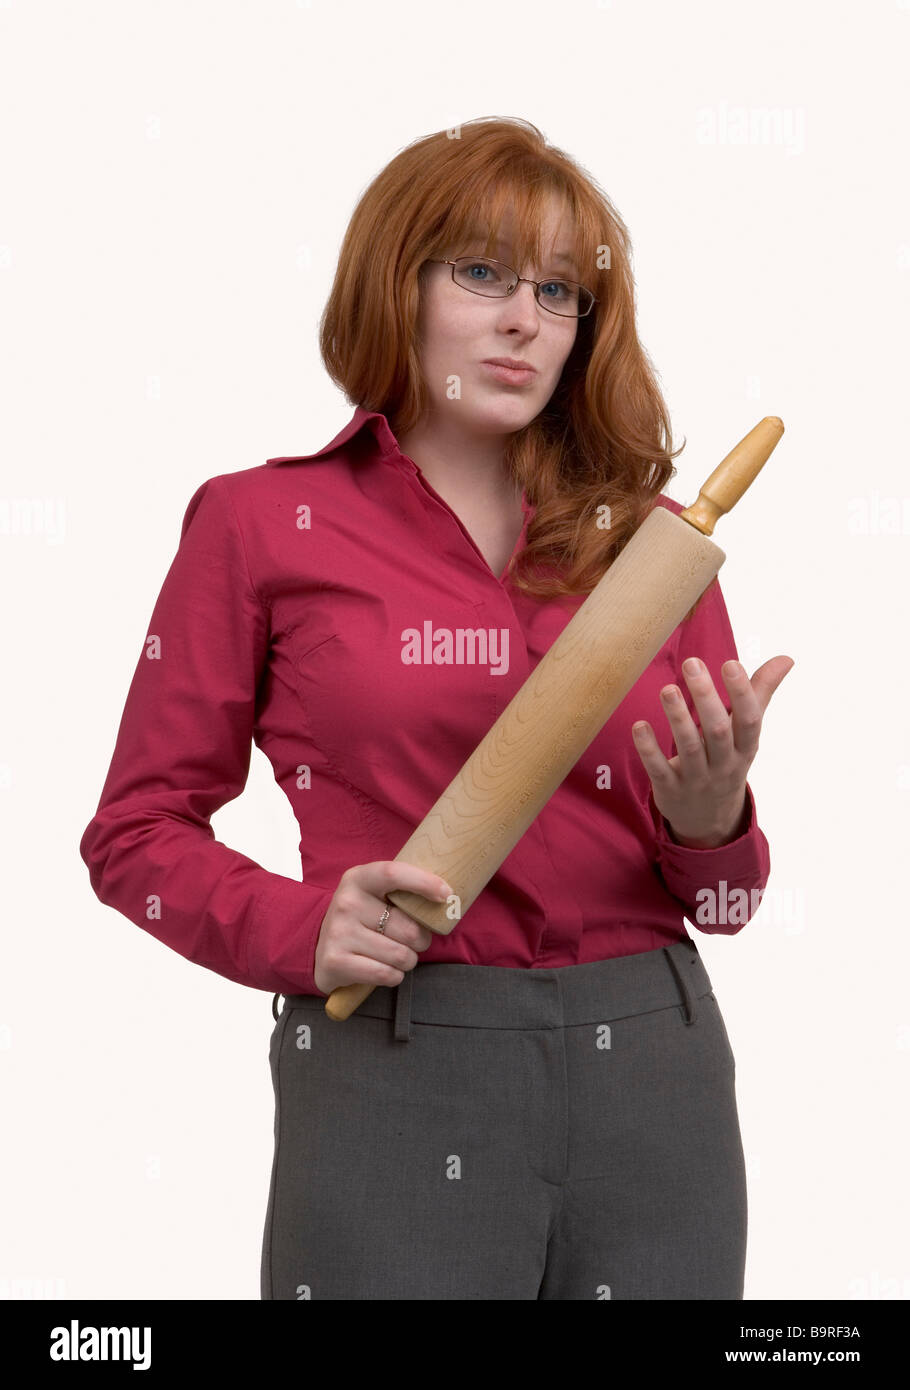 Une femme rousse en colère avec un rouleau à pâtisserie en bois spéléologie dans une manière menaçante Banque D'Images